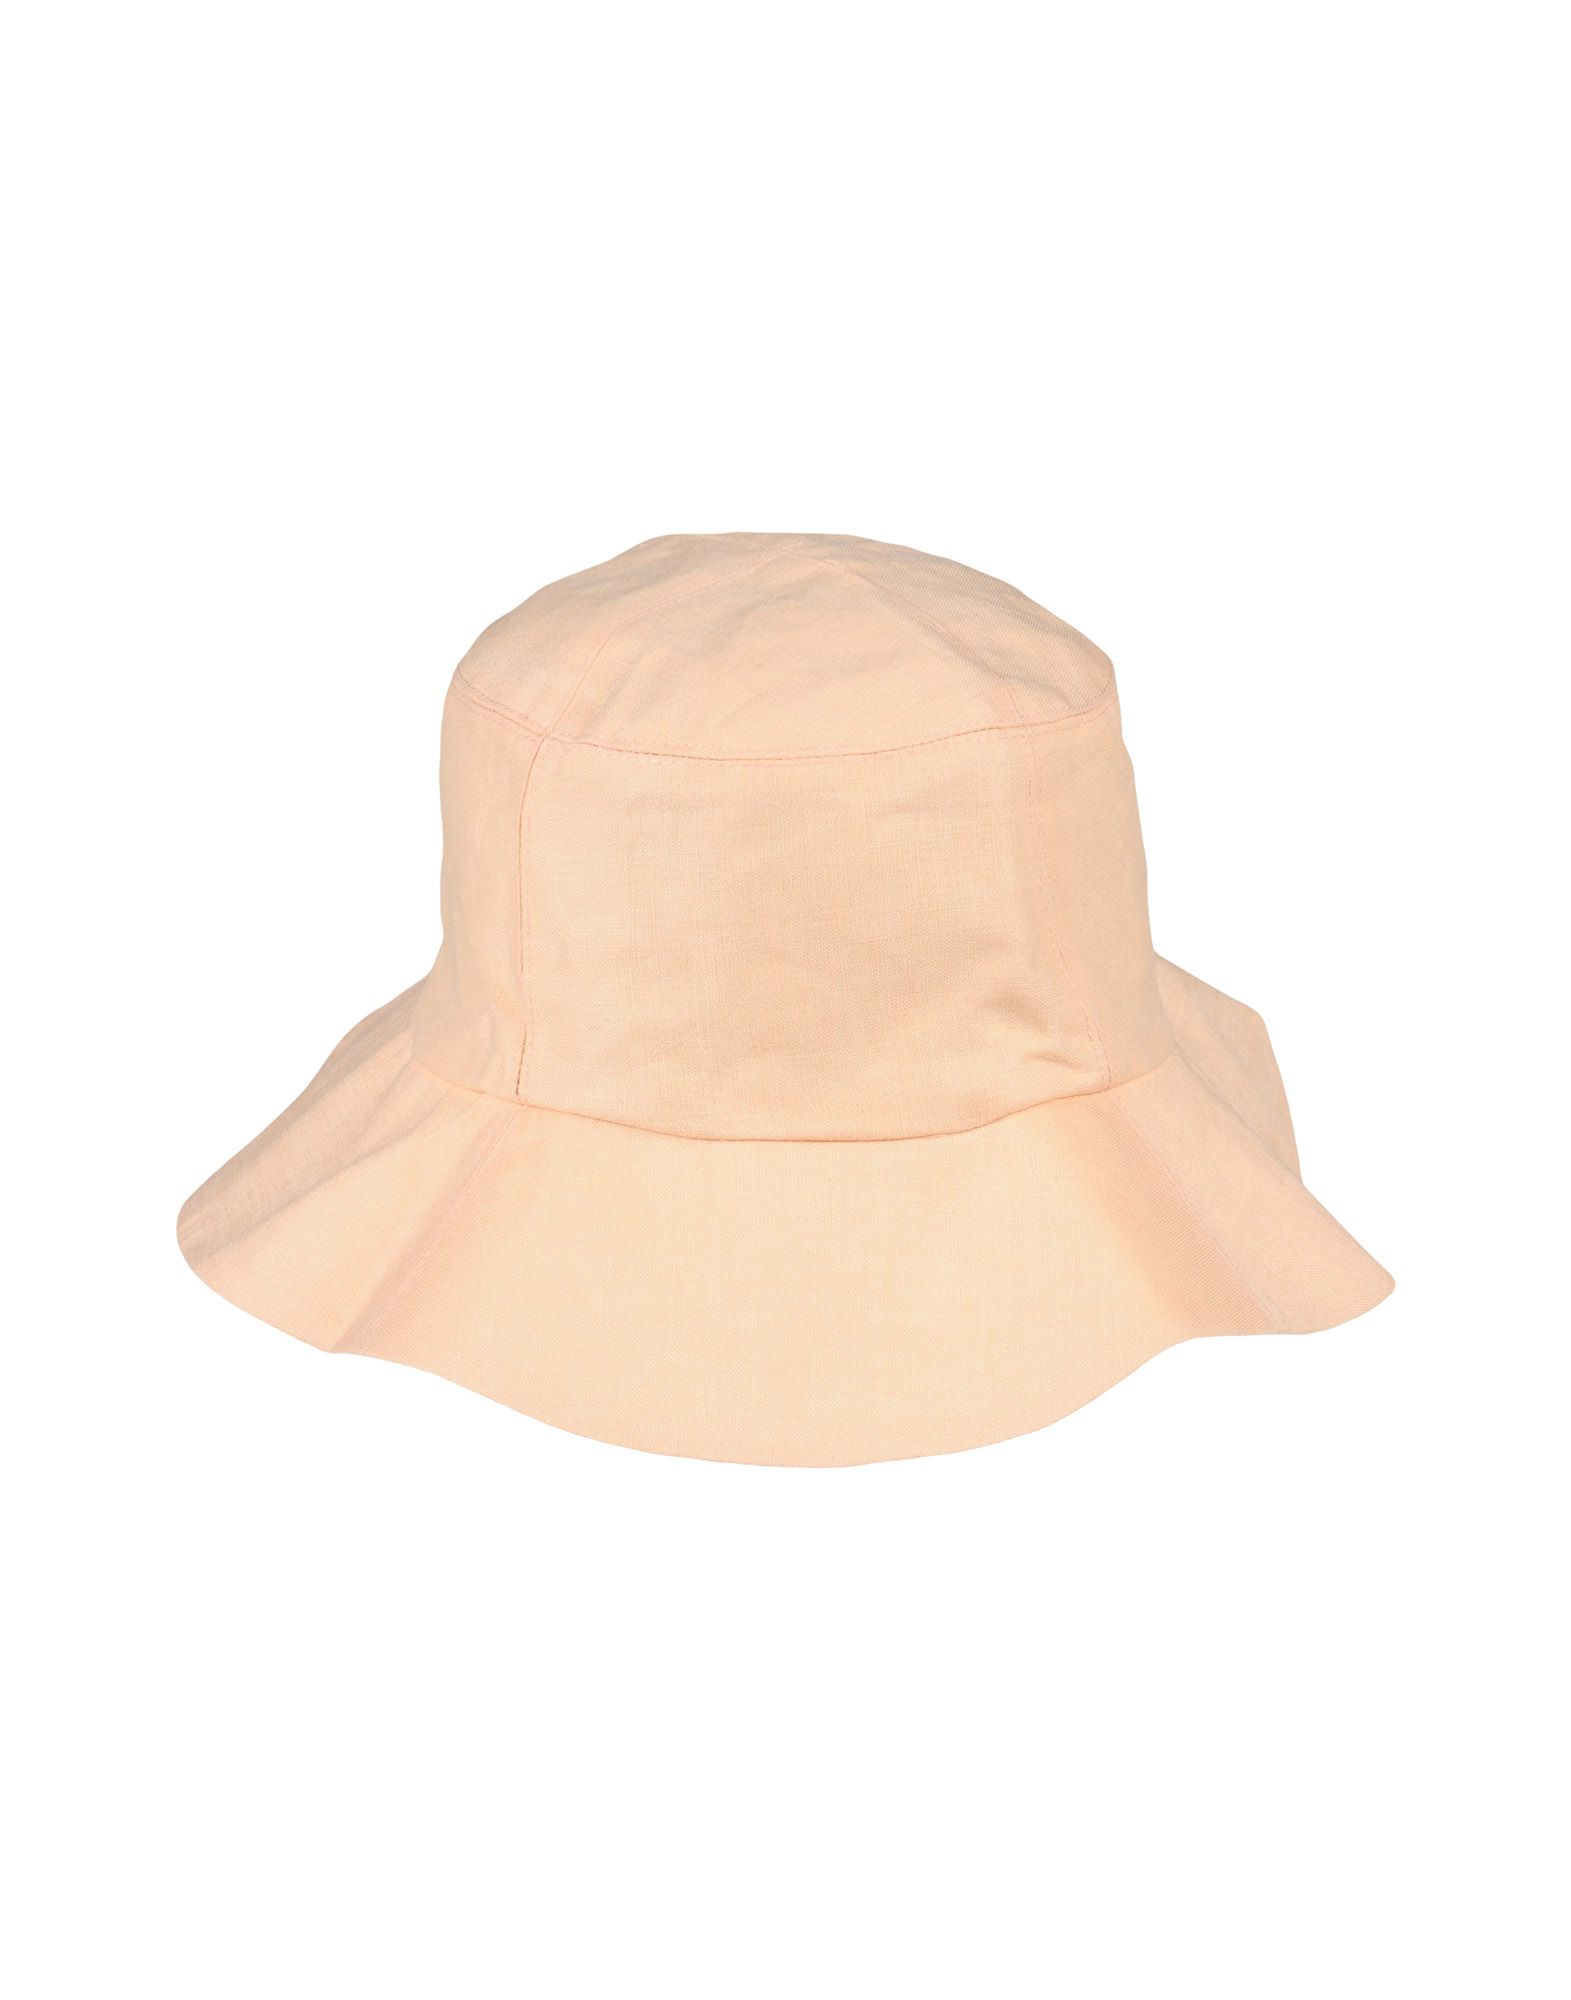 《送料無料》CLYDE レディース 帽子 あんず色 54 コットン 100%